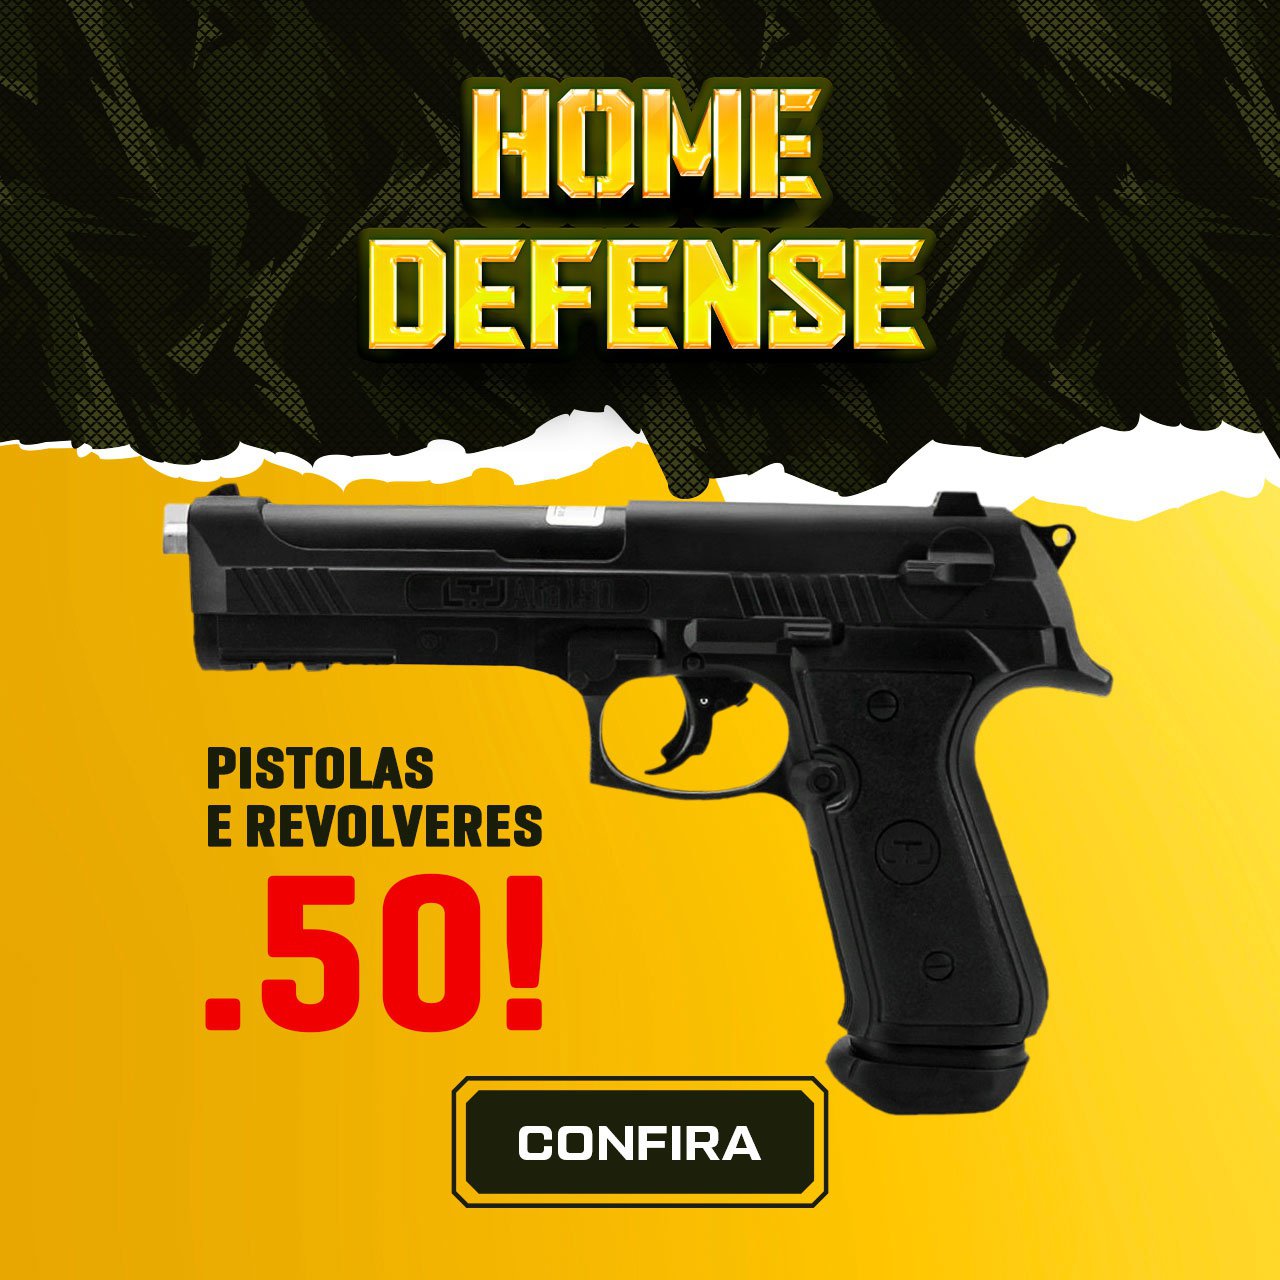 Home defense - Pistolas e Revolveres .50!